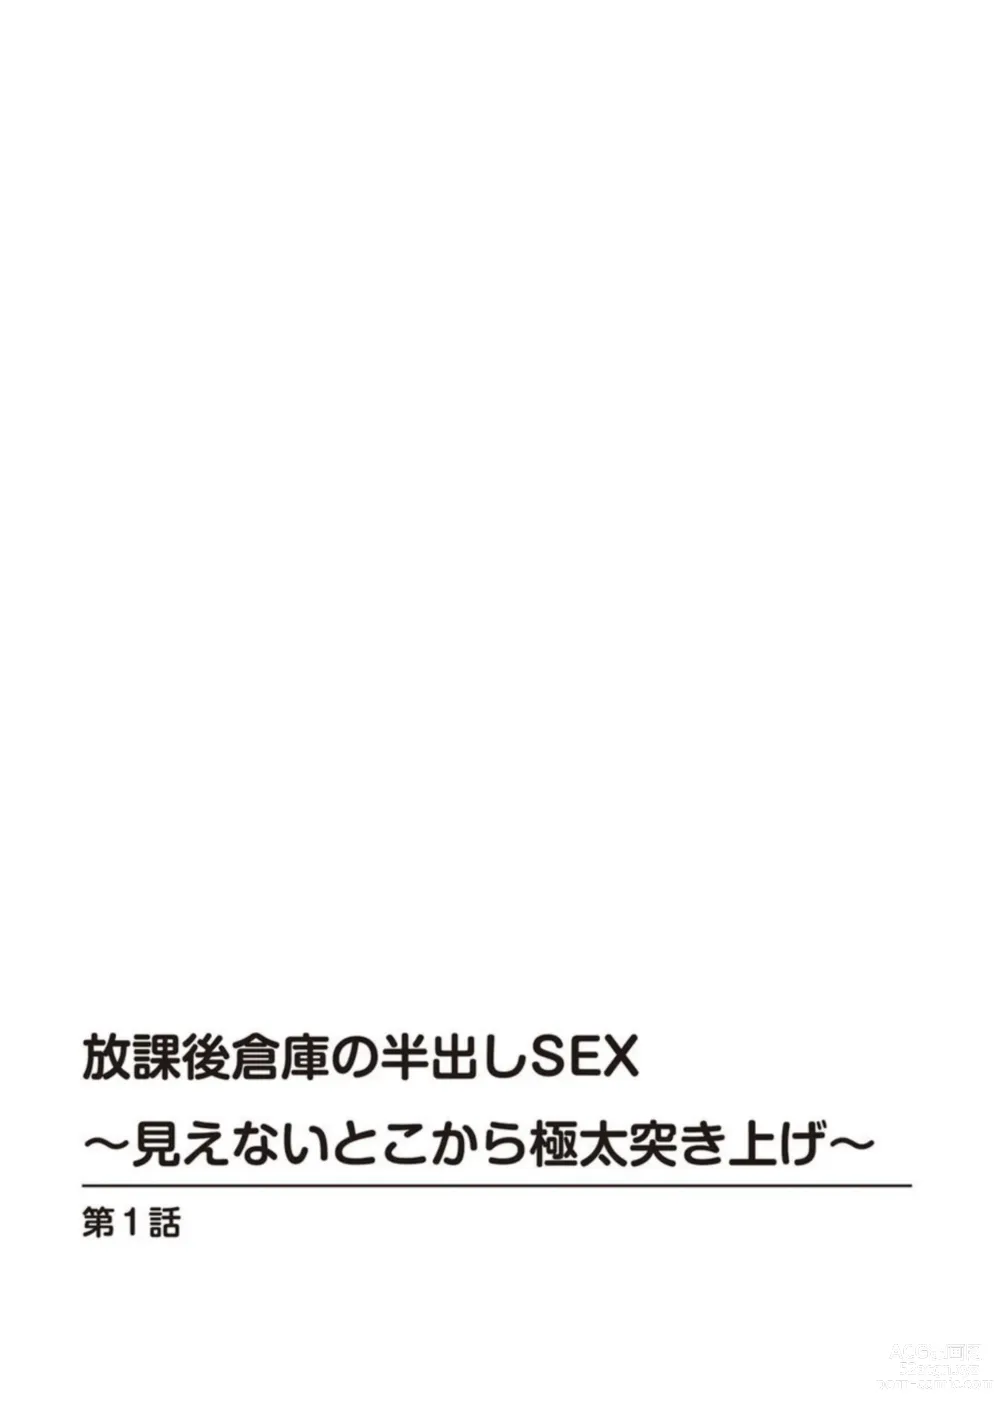 Page 2 of manga Hōkago Sōko no Han Dashi SEX ～ Mienai Toko Kara Gokubuto Tsukiage 1